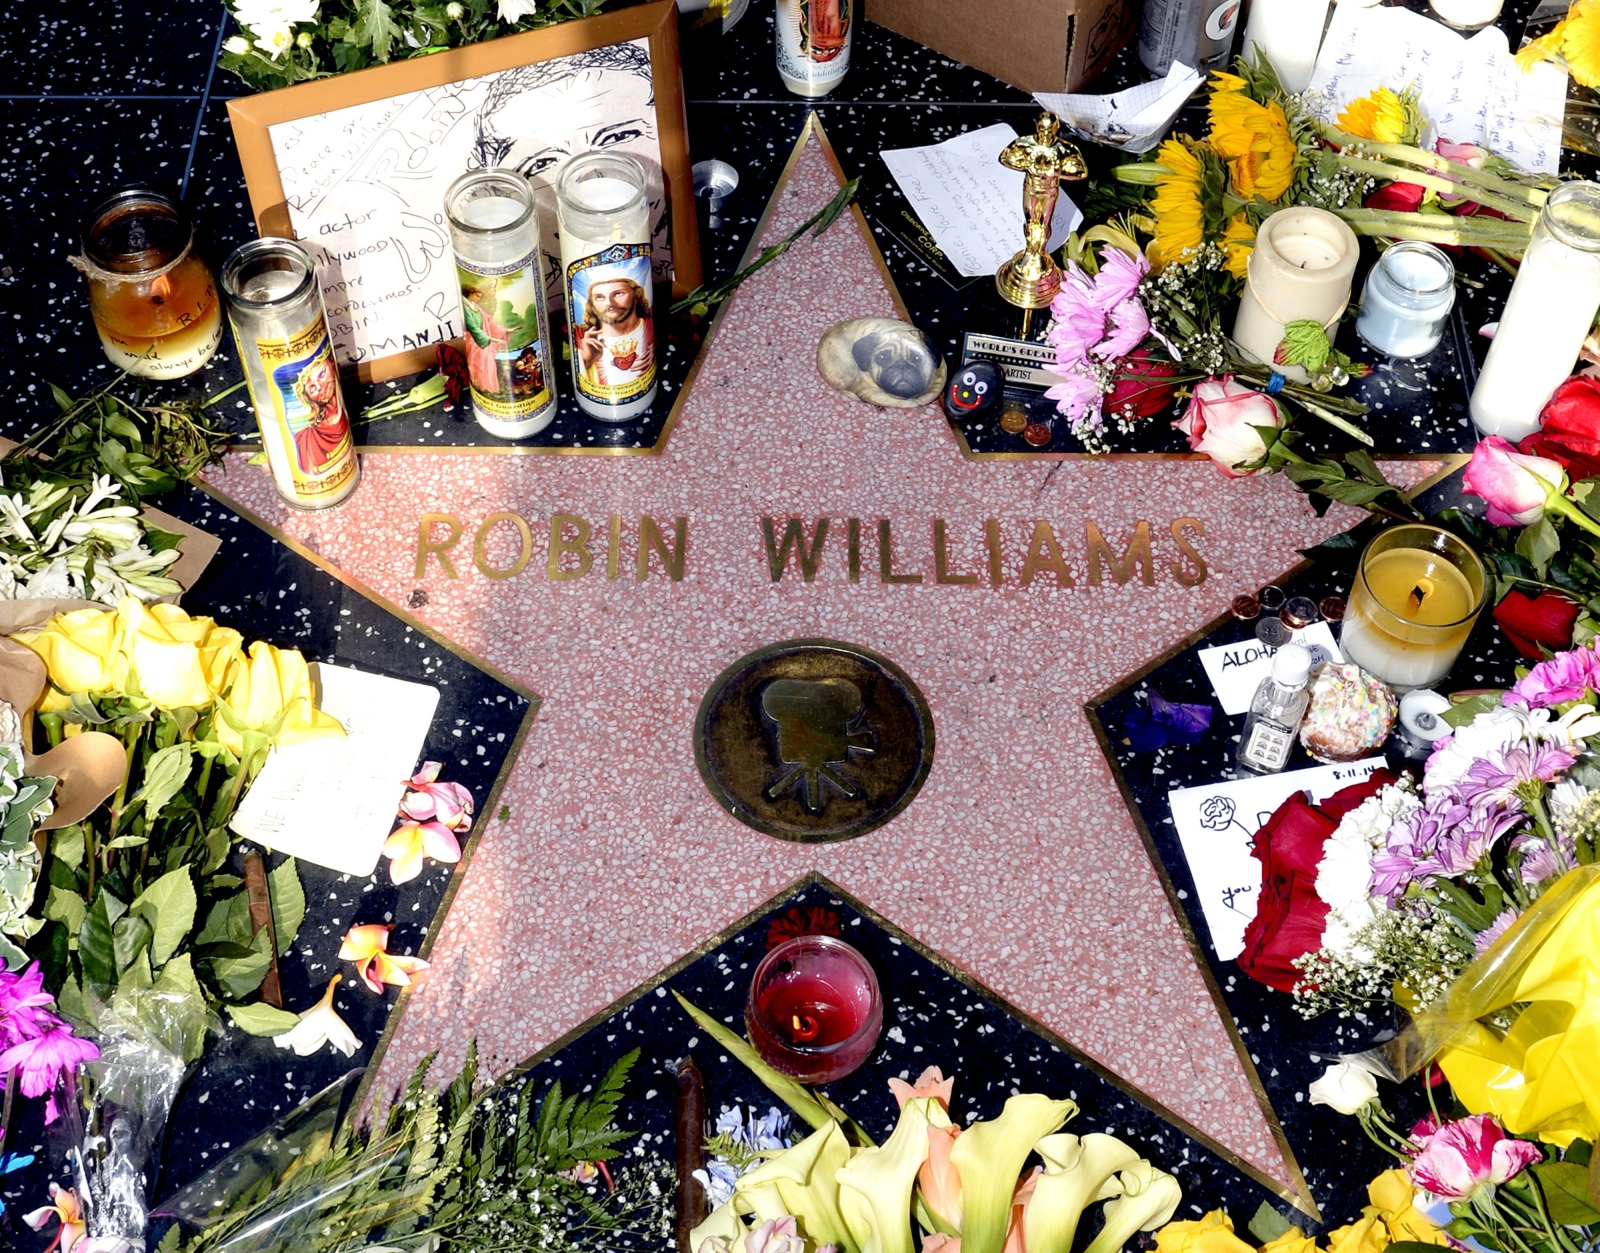 Gwiazda Robina Williamsa w hollywoodzkiej Alei Sław